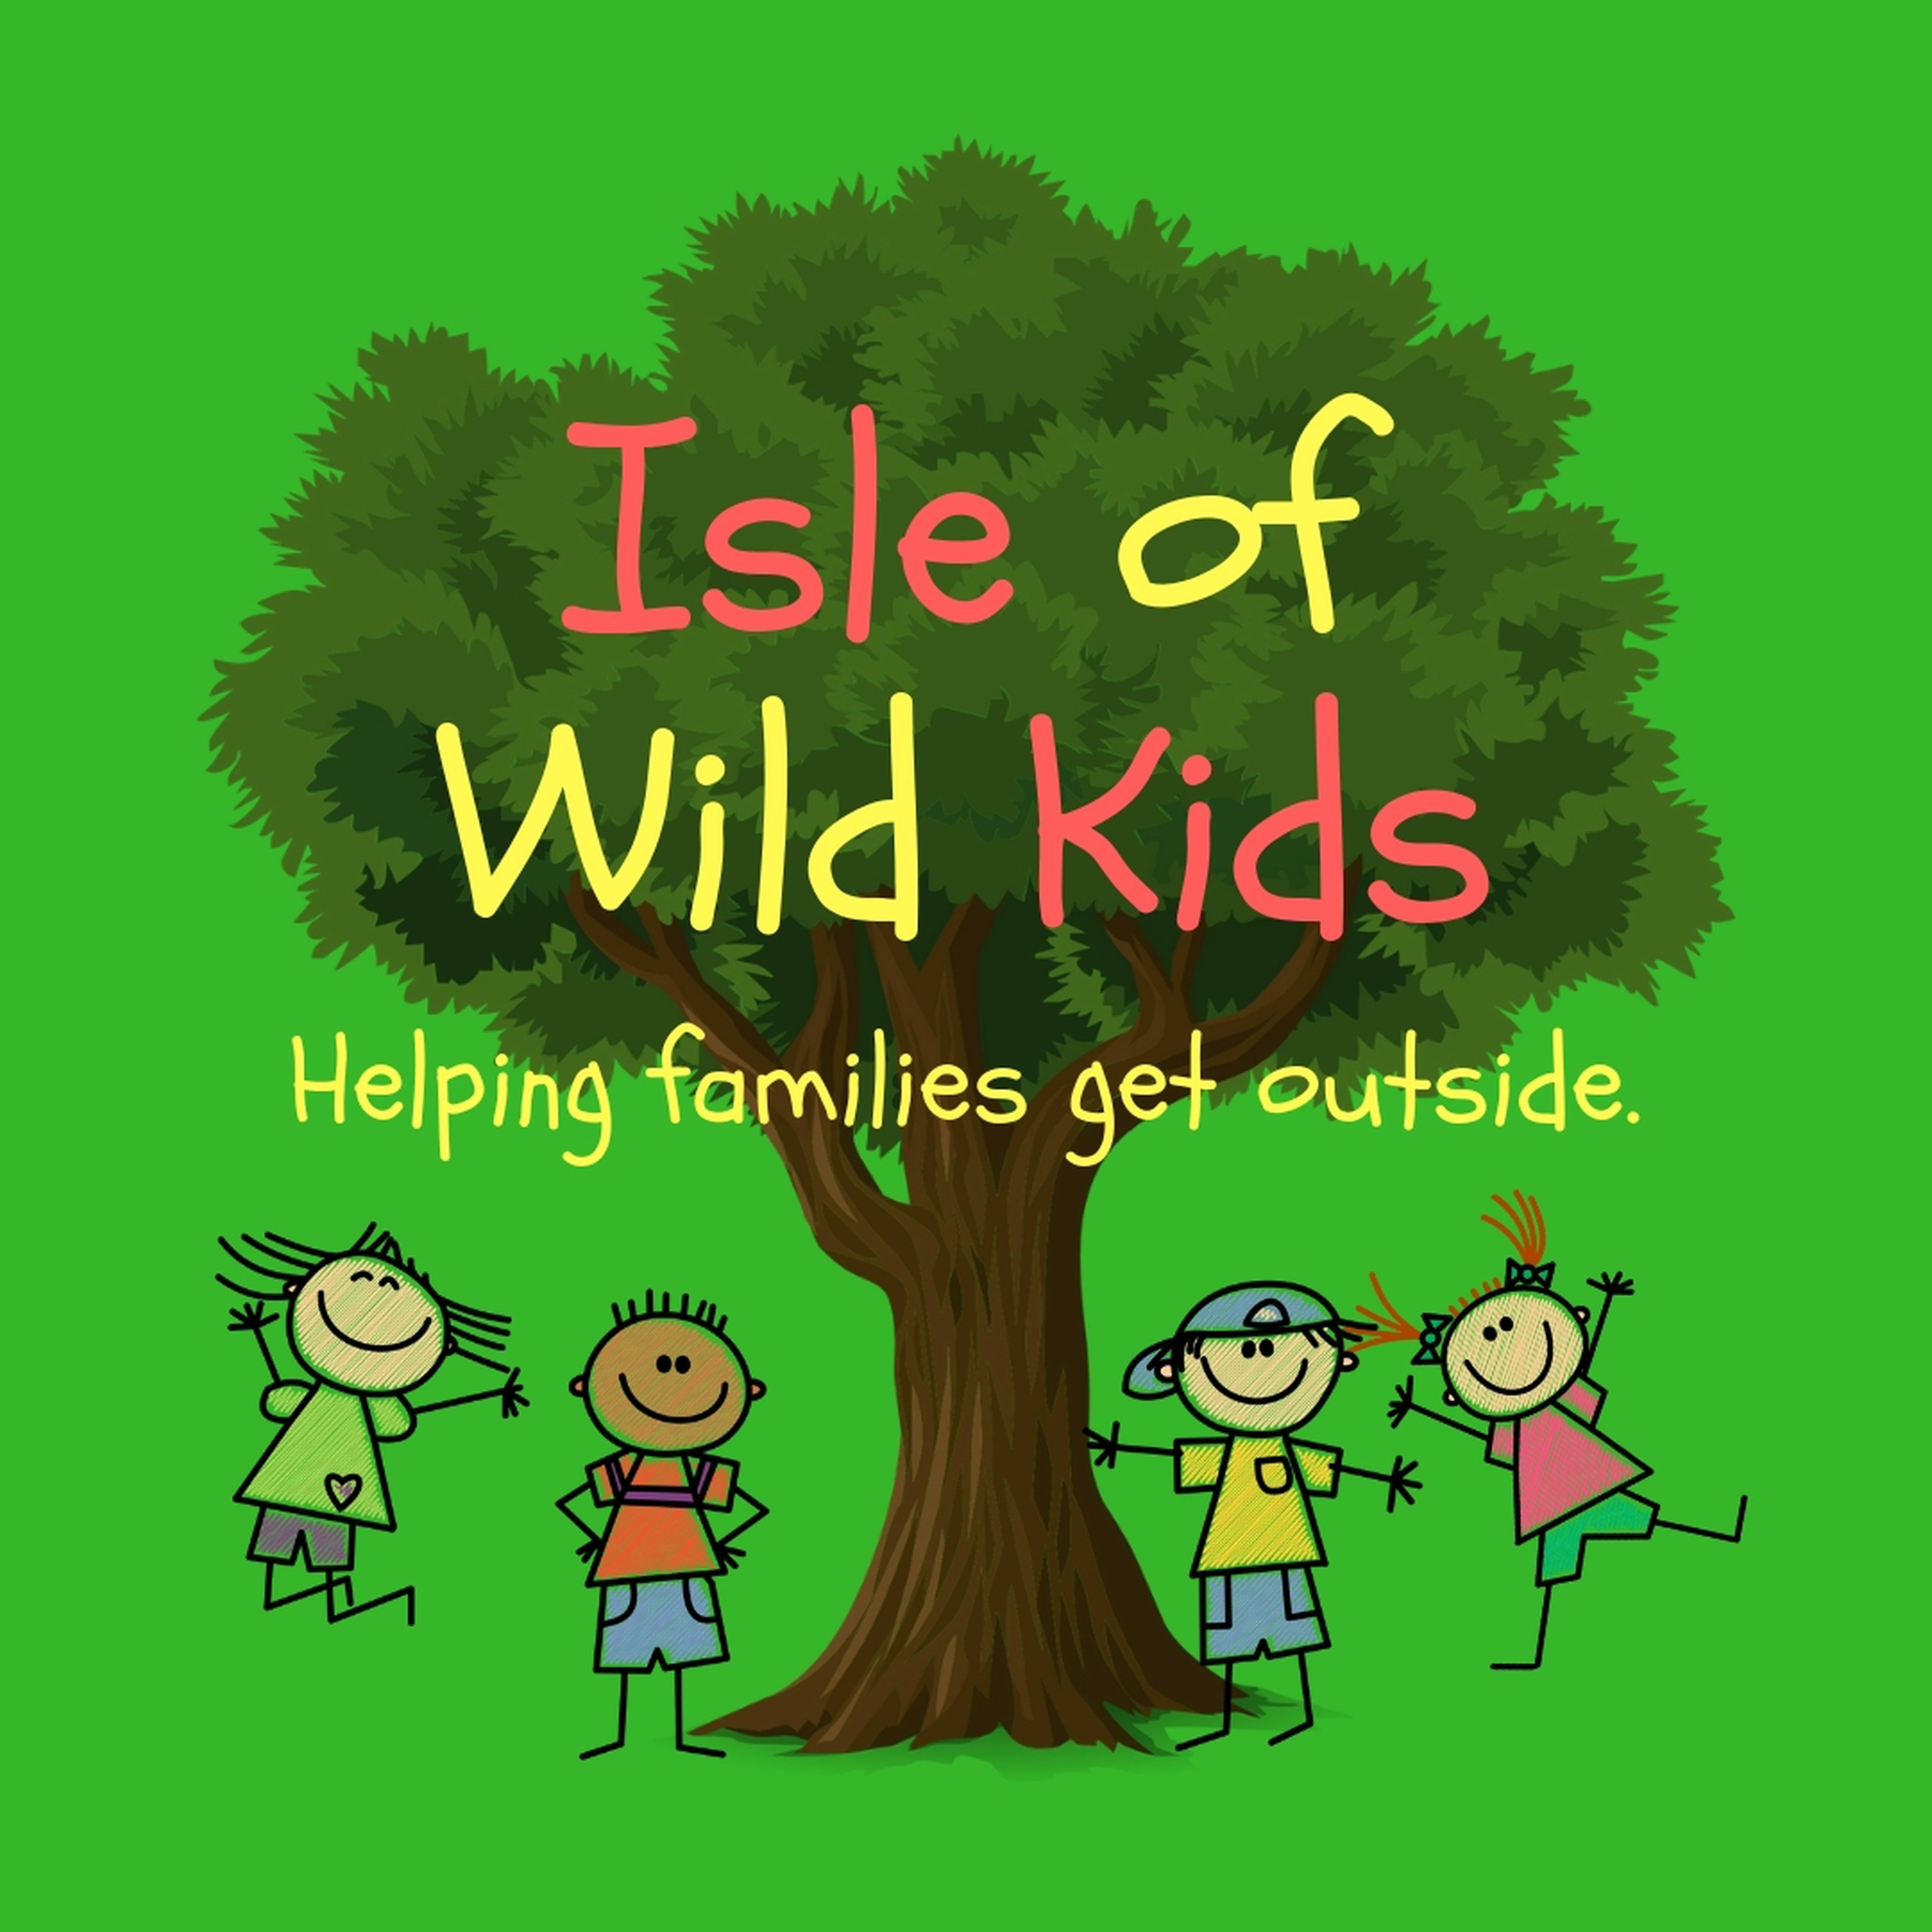 Isle of Wild Kids